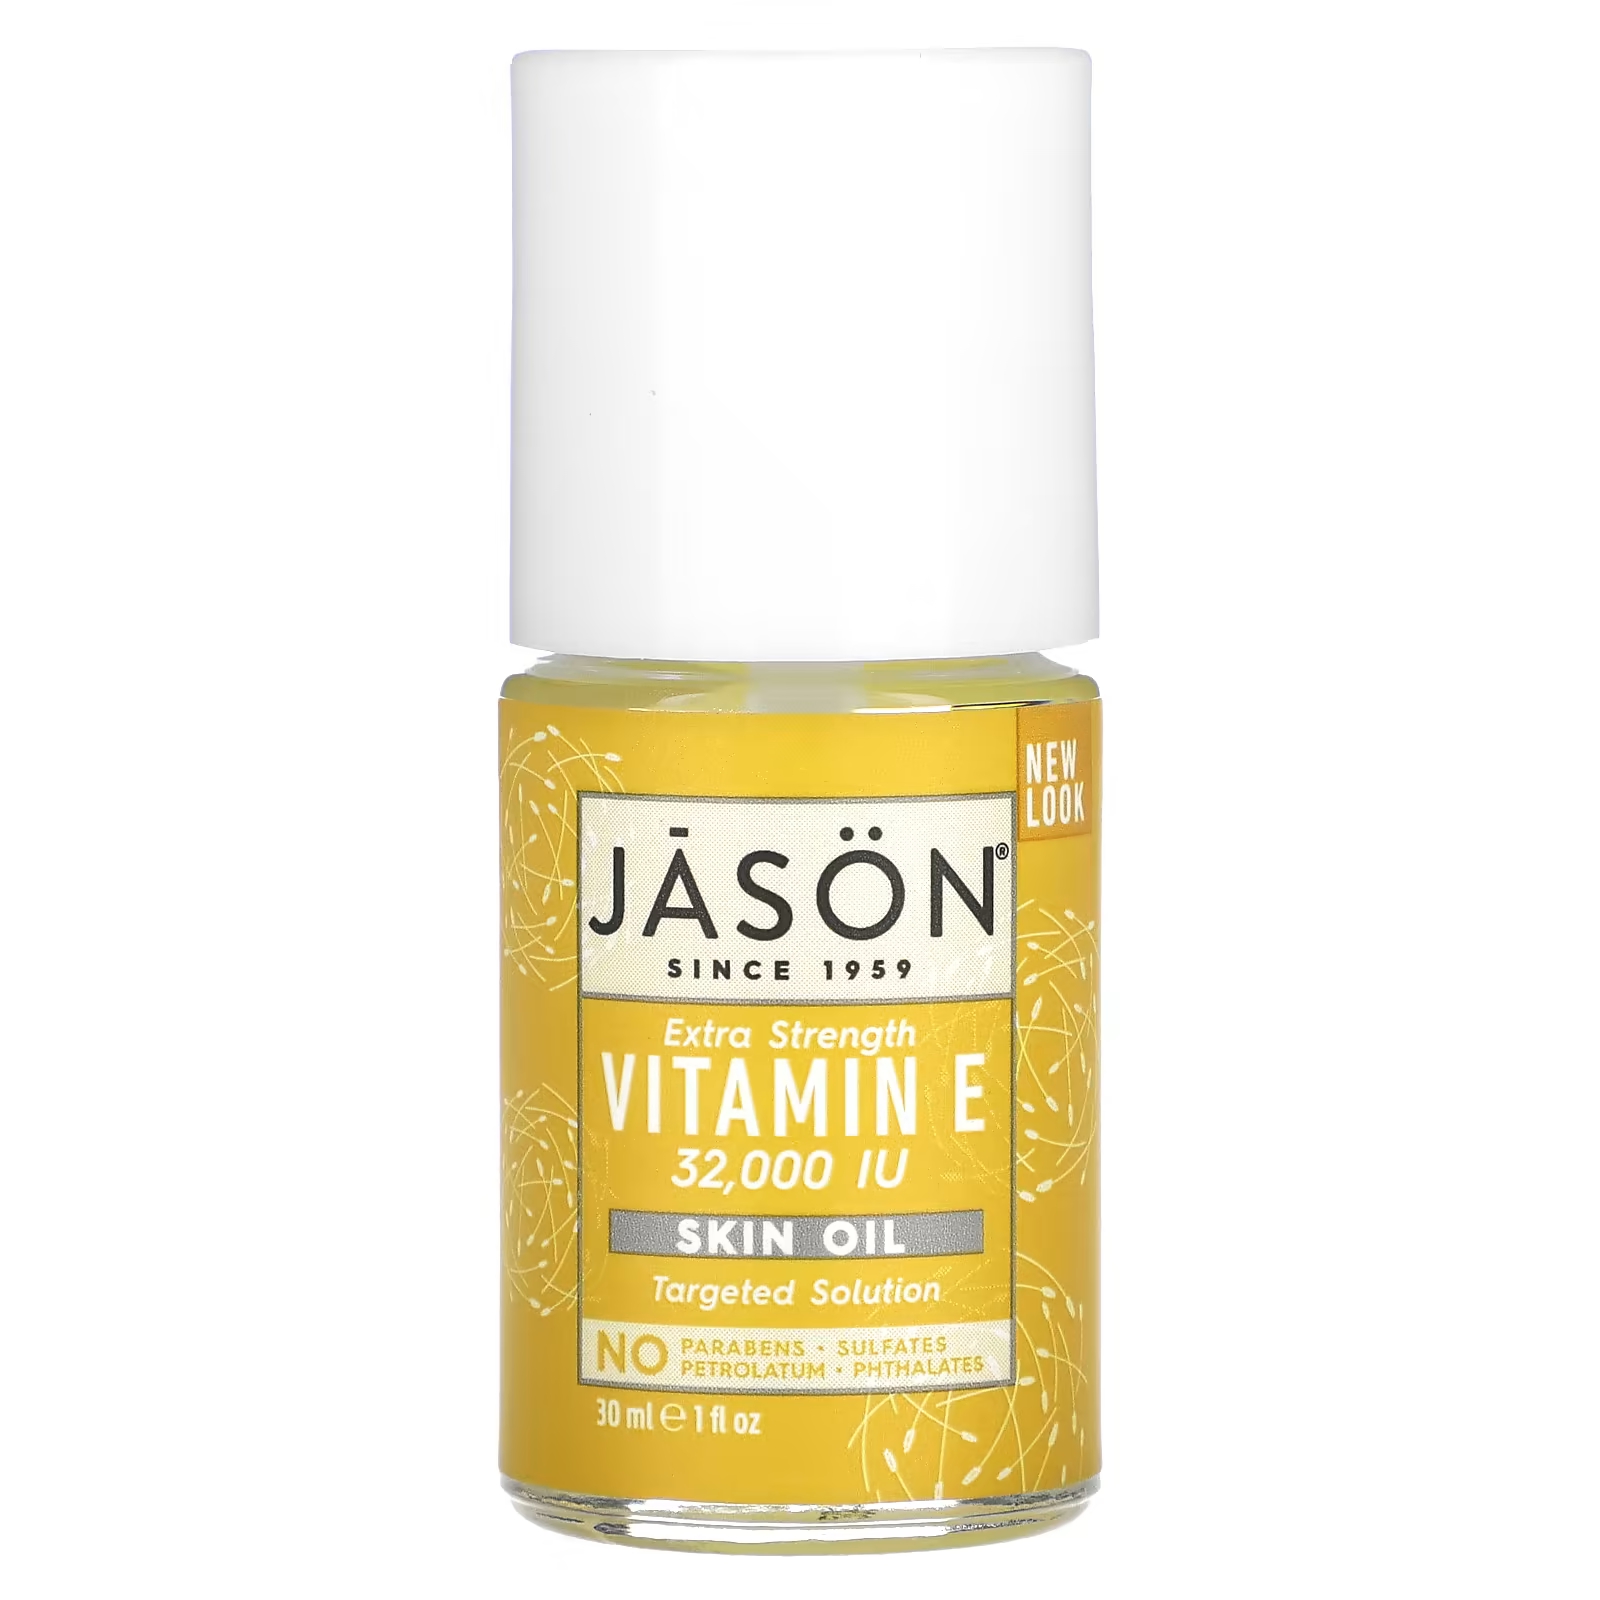 jason natural масло для кожи с витамином е 5000 ме 118 мл 4 жидких унции Масло для кожи Jason Natural Extra Strength с витамином Е 32 000 МЕ, 30 мл